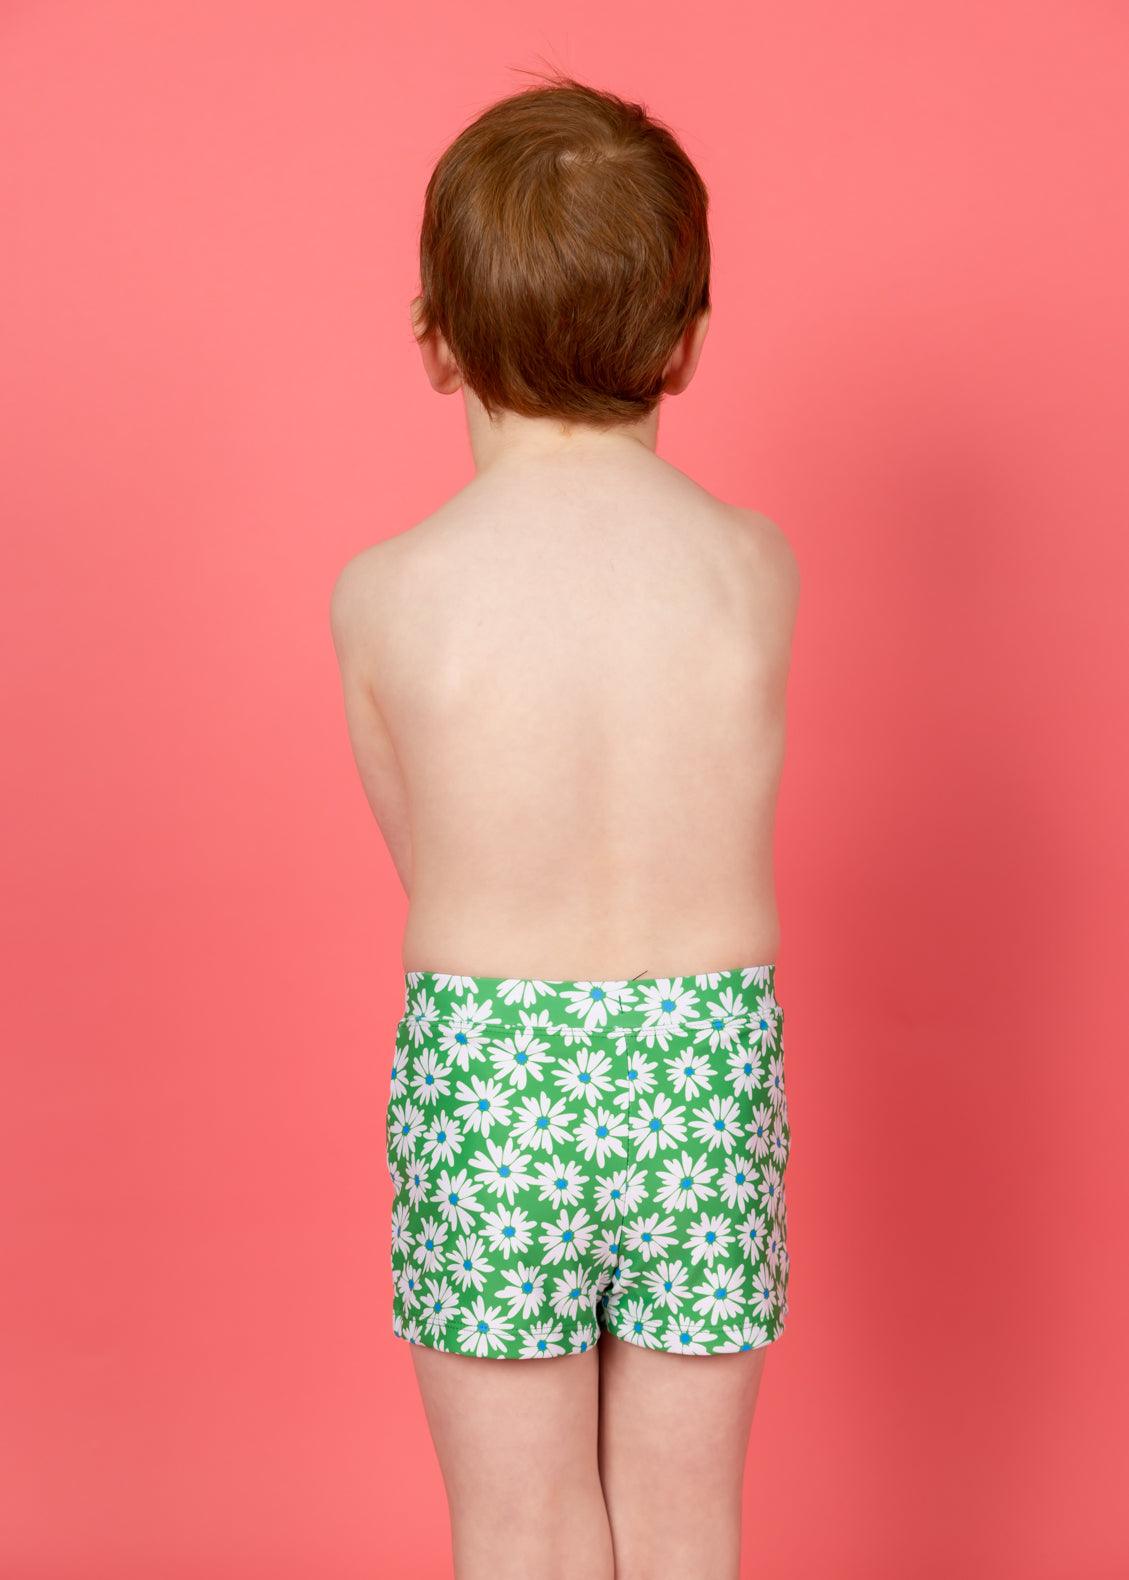 Boys Swimsuit - Shorts  - Green Daisy